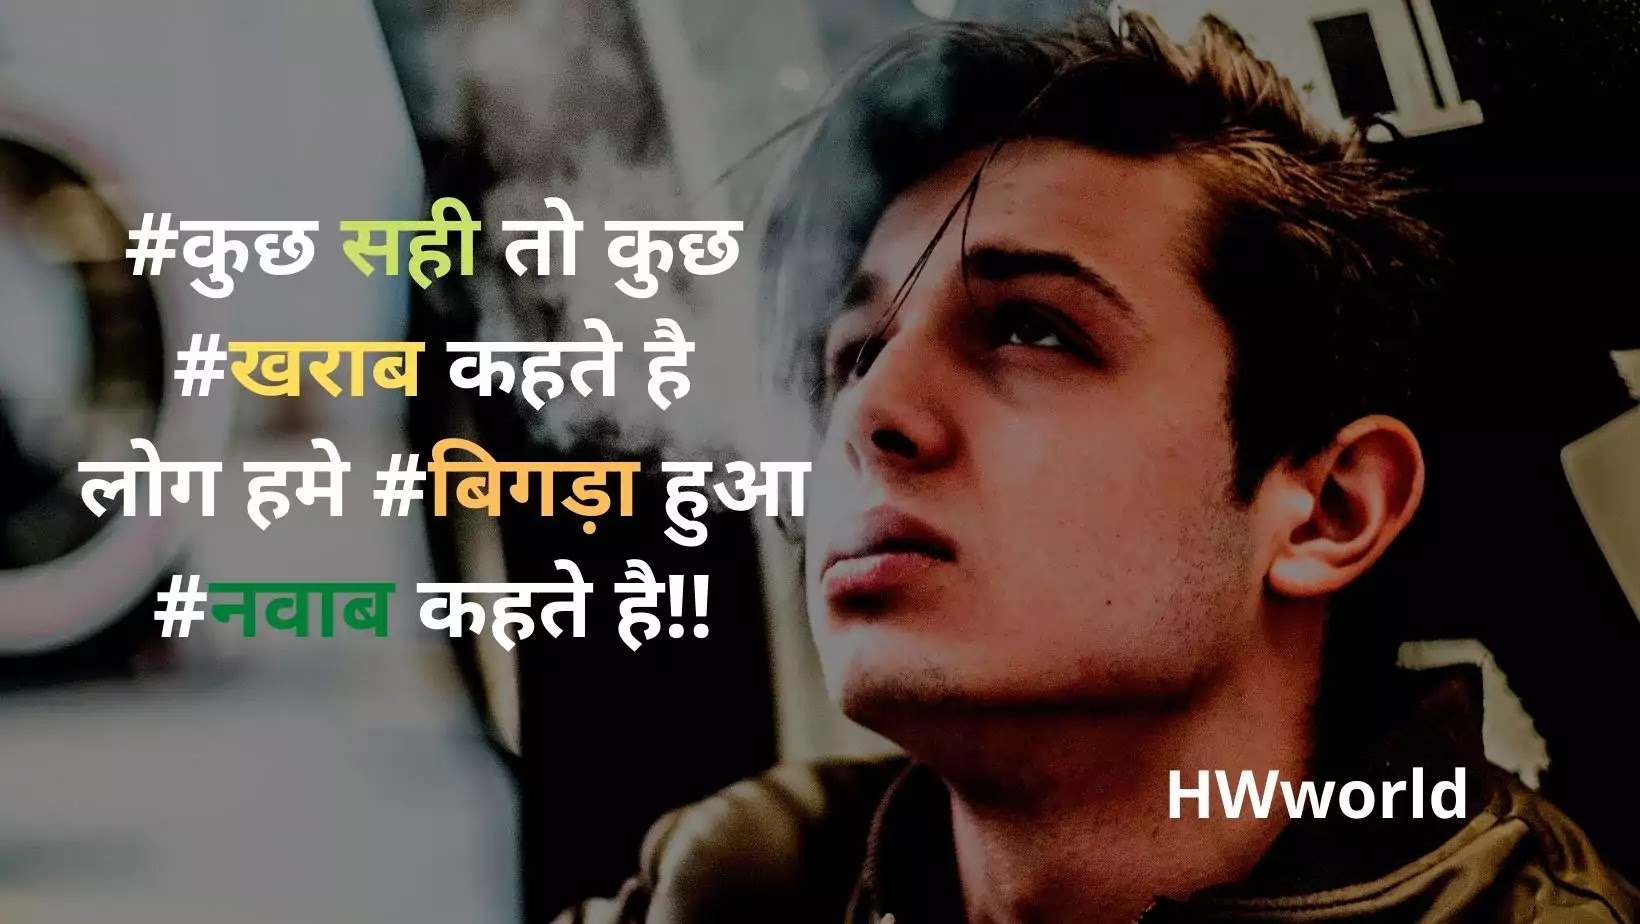 110+ Best Bad Boy Shayari Quotes in Hindi & English